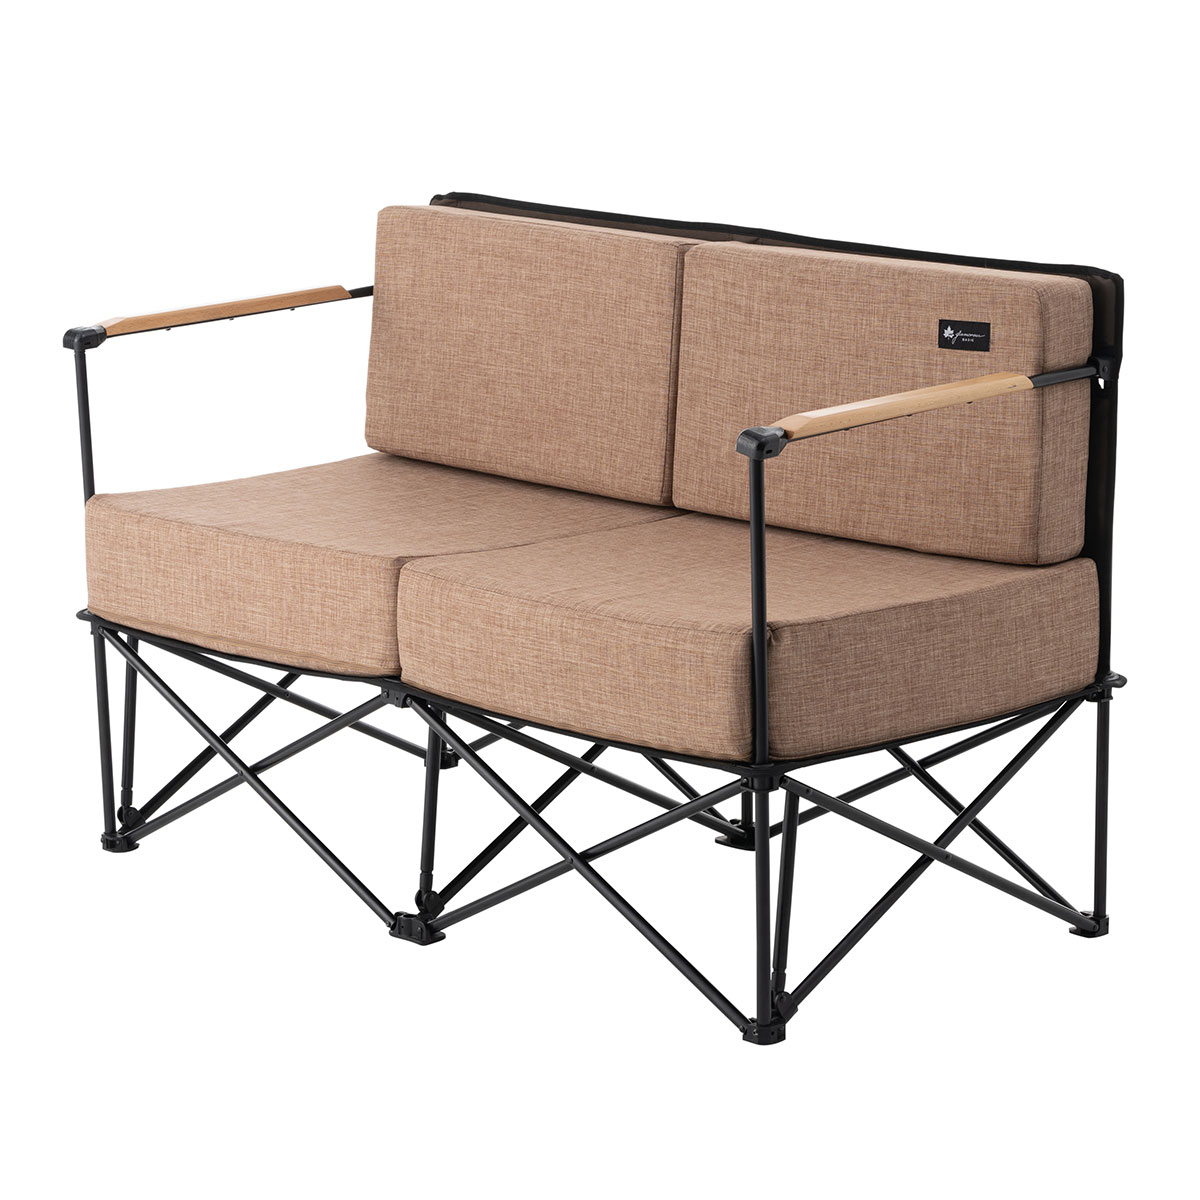 グランベーシック グランプソファ2 ギア 家具 椅子 ベンチ 製品情報 ロゴスショップ公式オンライン